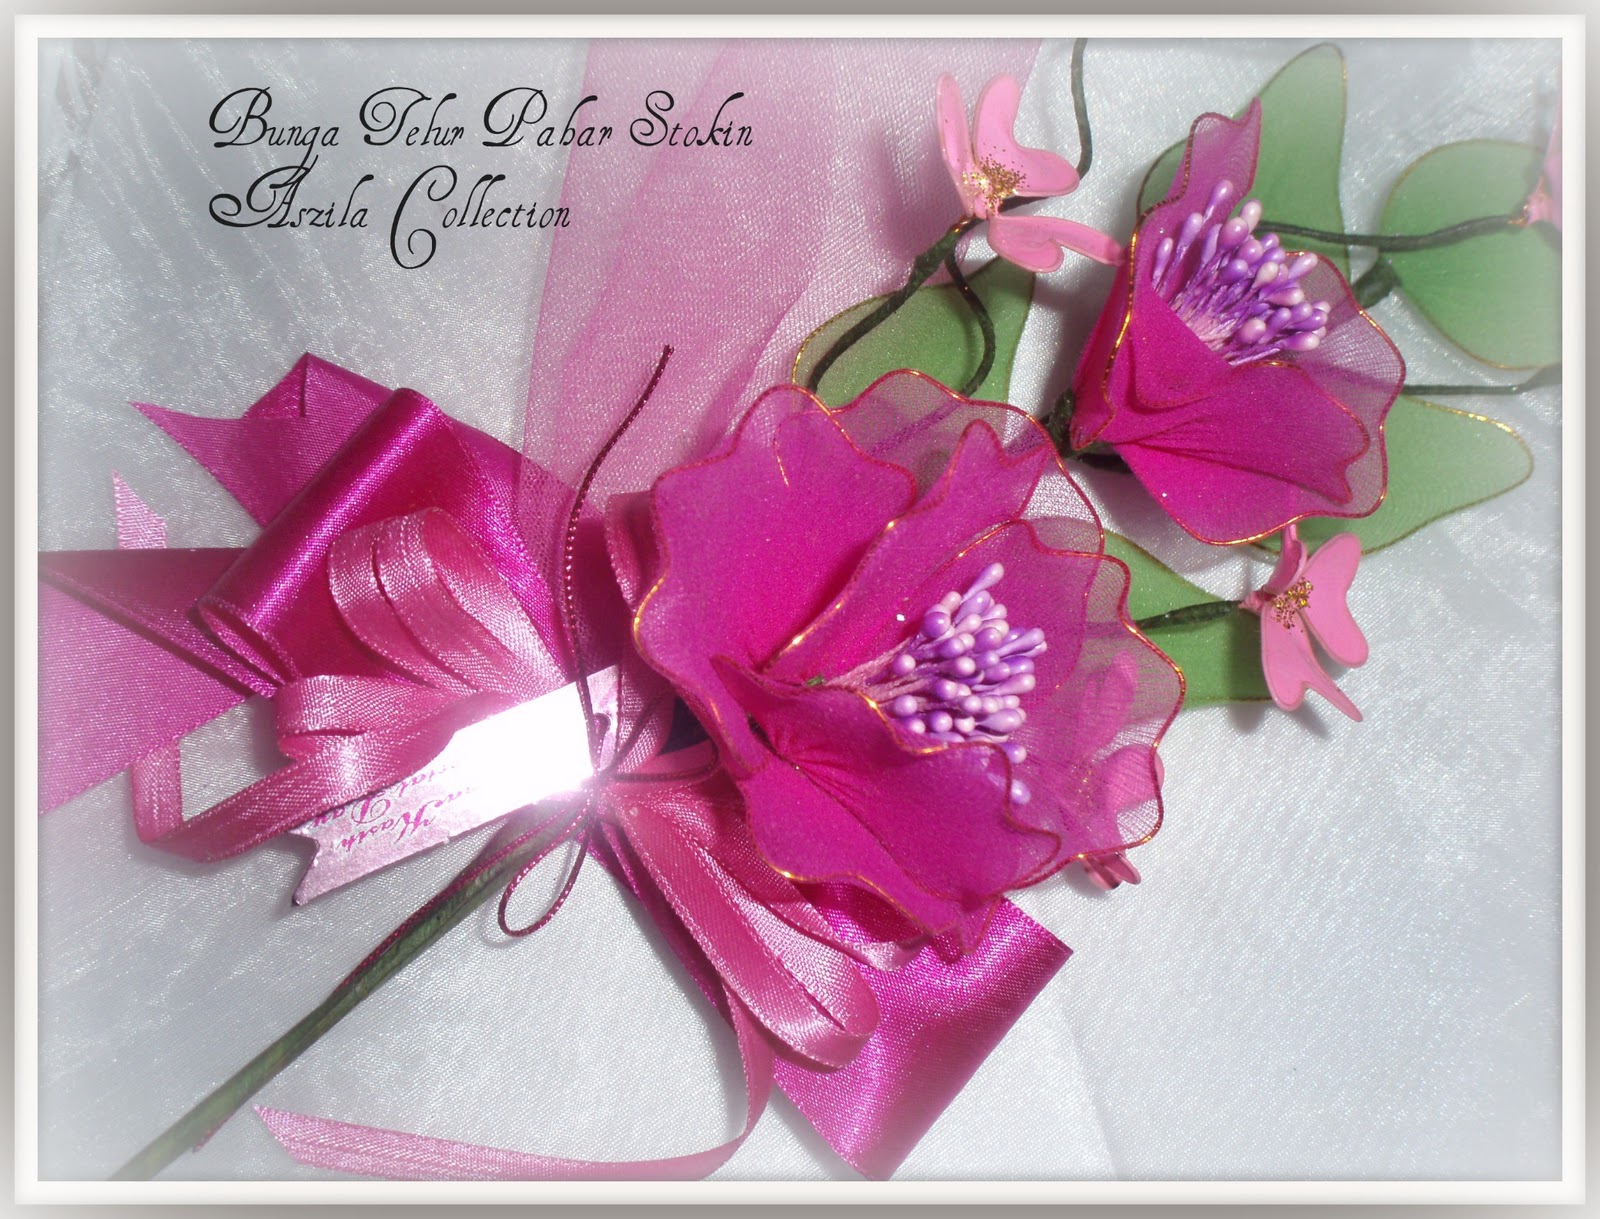 Gerbang Perkahwinan Aszila Bunga  Telur  Pahar Jingga Pink